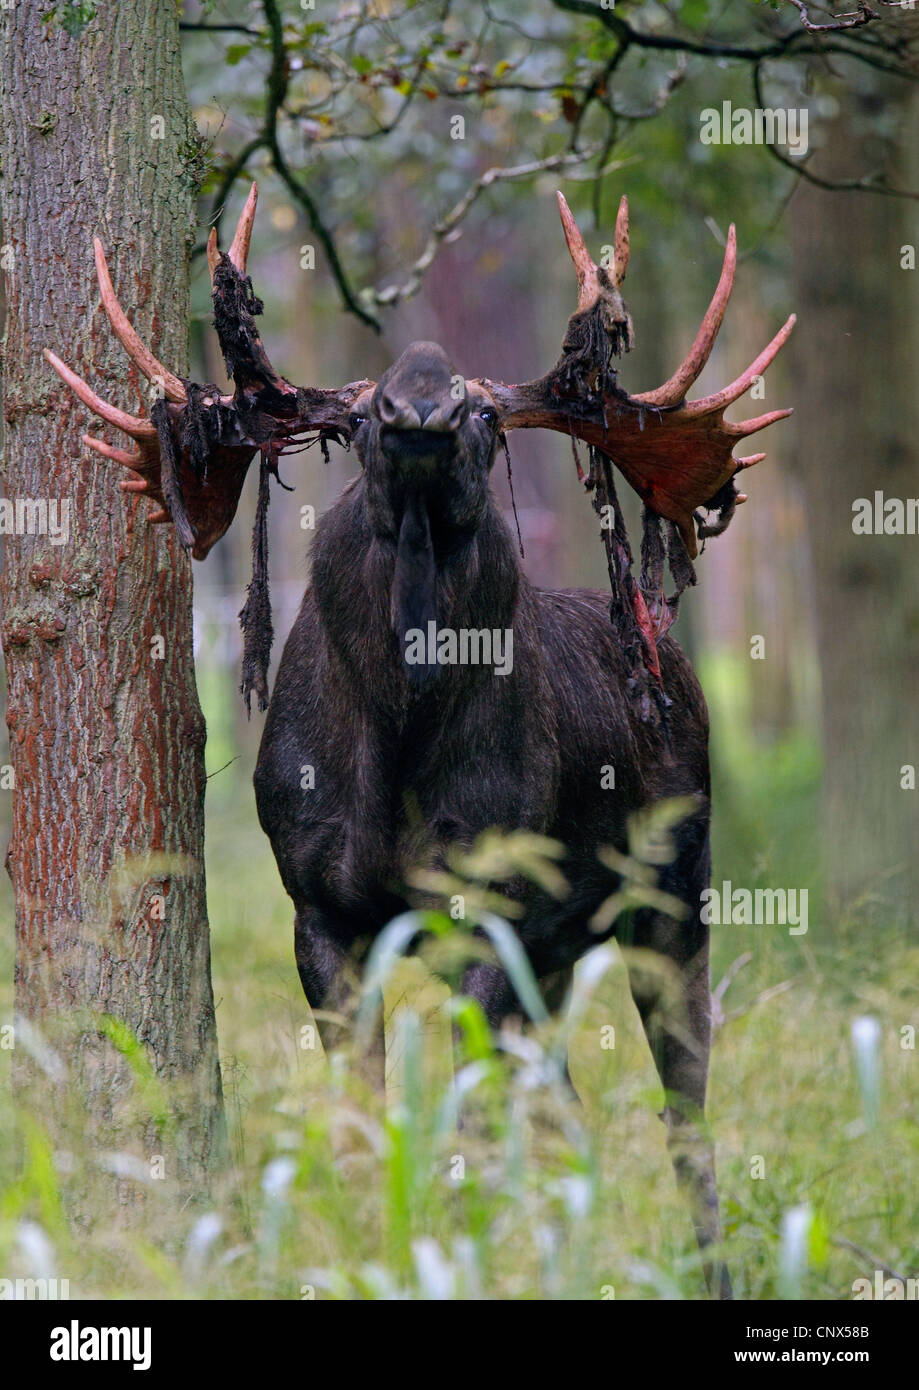 Elk, moose europeo (Alces alces alces), Bull con piezas de bast en la cornamenta después frotando apagado el terciopelo, Alemania Foto de stock